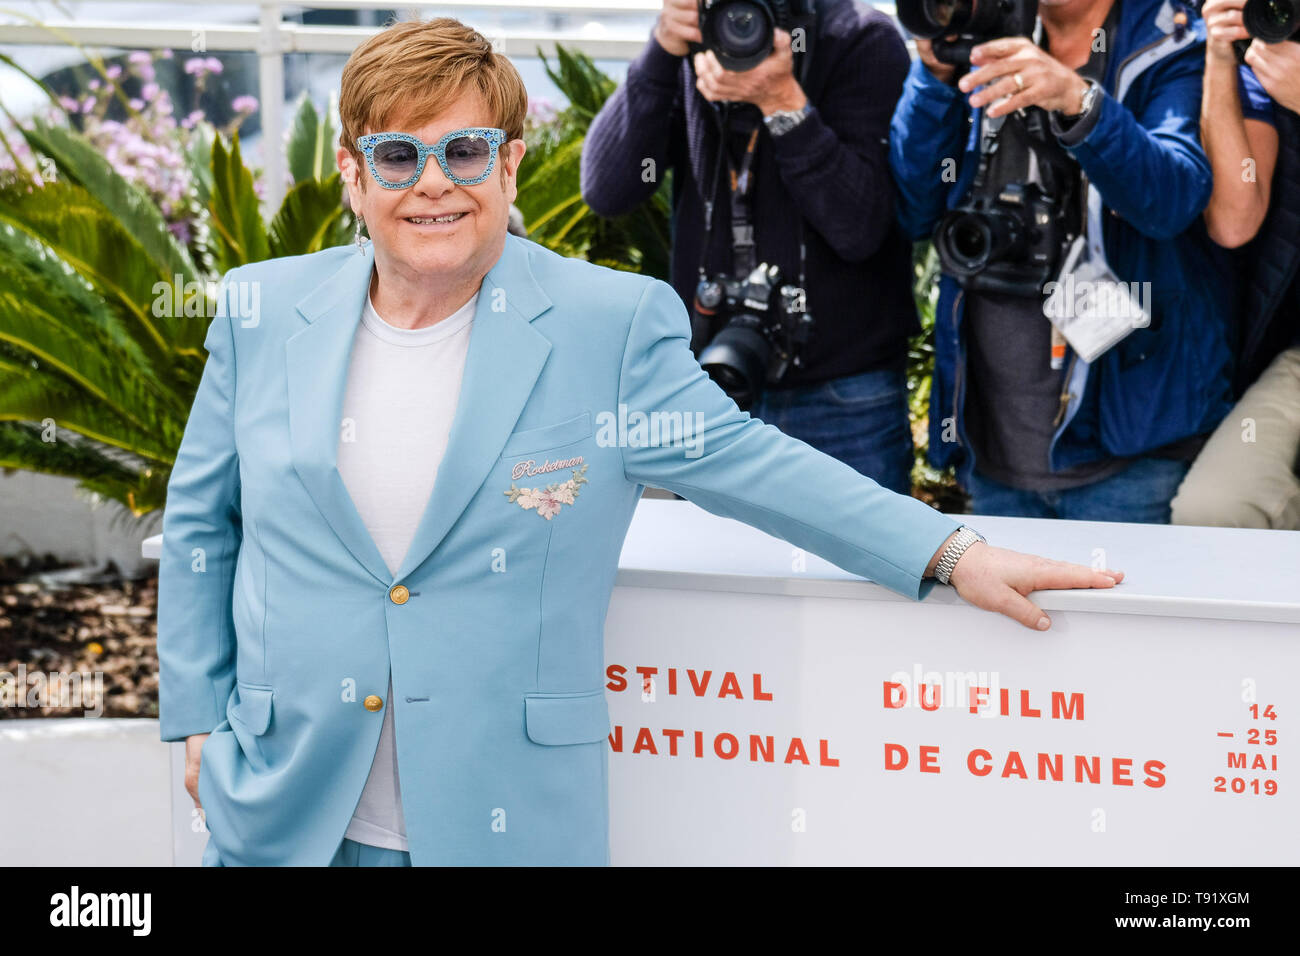 Cannes, Francia. 16 Maggio, 2019. Elton John pone a un photocall per Rocketman giovedì 16 maggio 2019 presso la 72a edizione del Festival de Cannes, Palais des Festivals Cannes. Nella foto: Elton John. Foto di credito: Julie Edwards/Alamy Live News Foto Stock